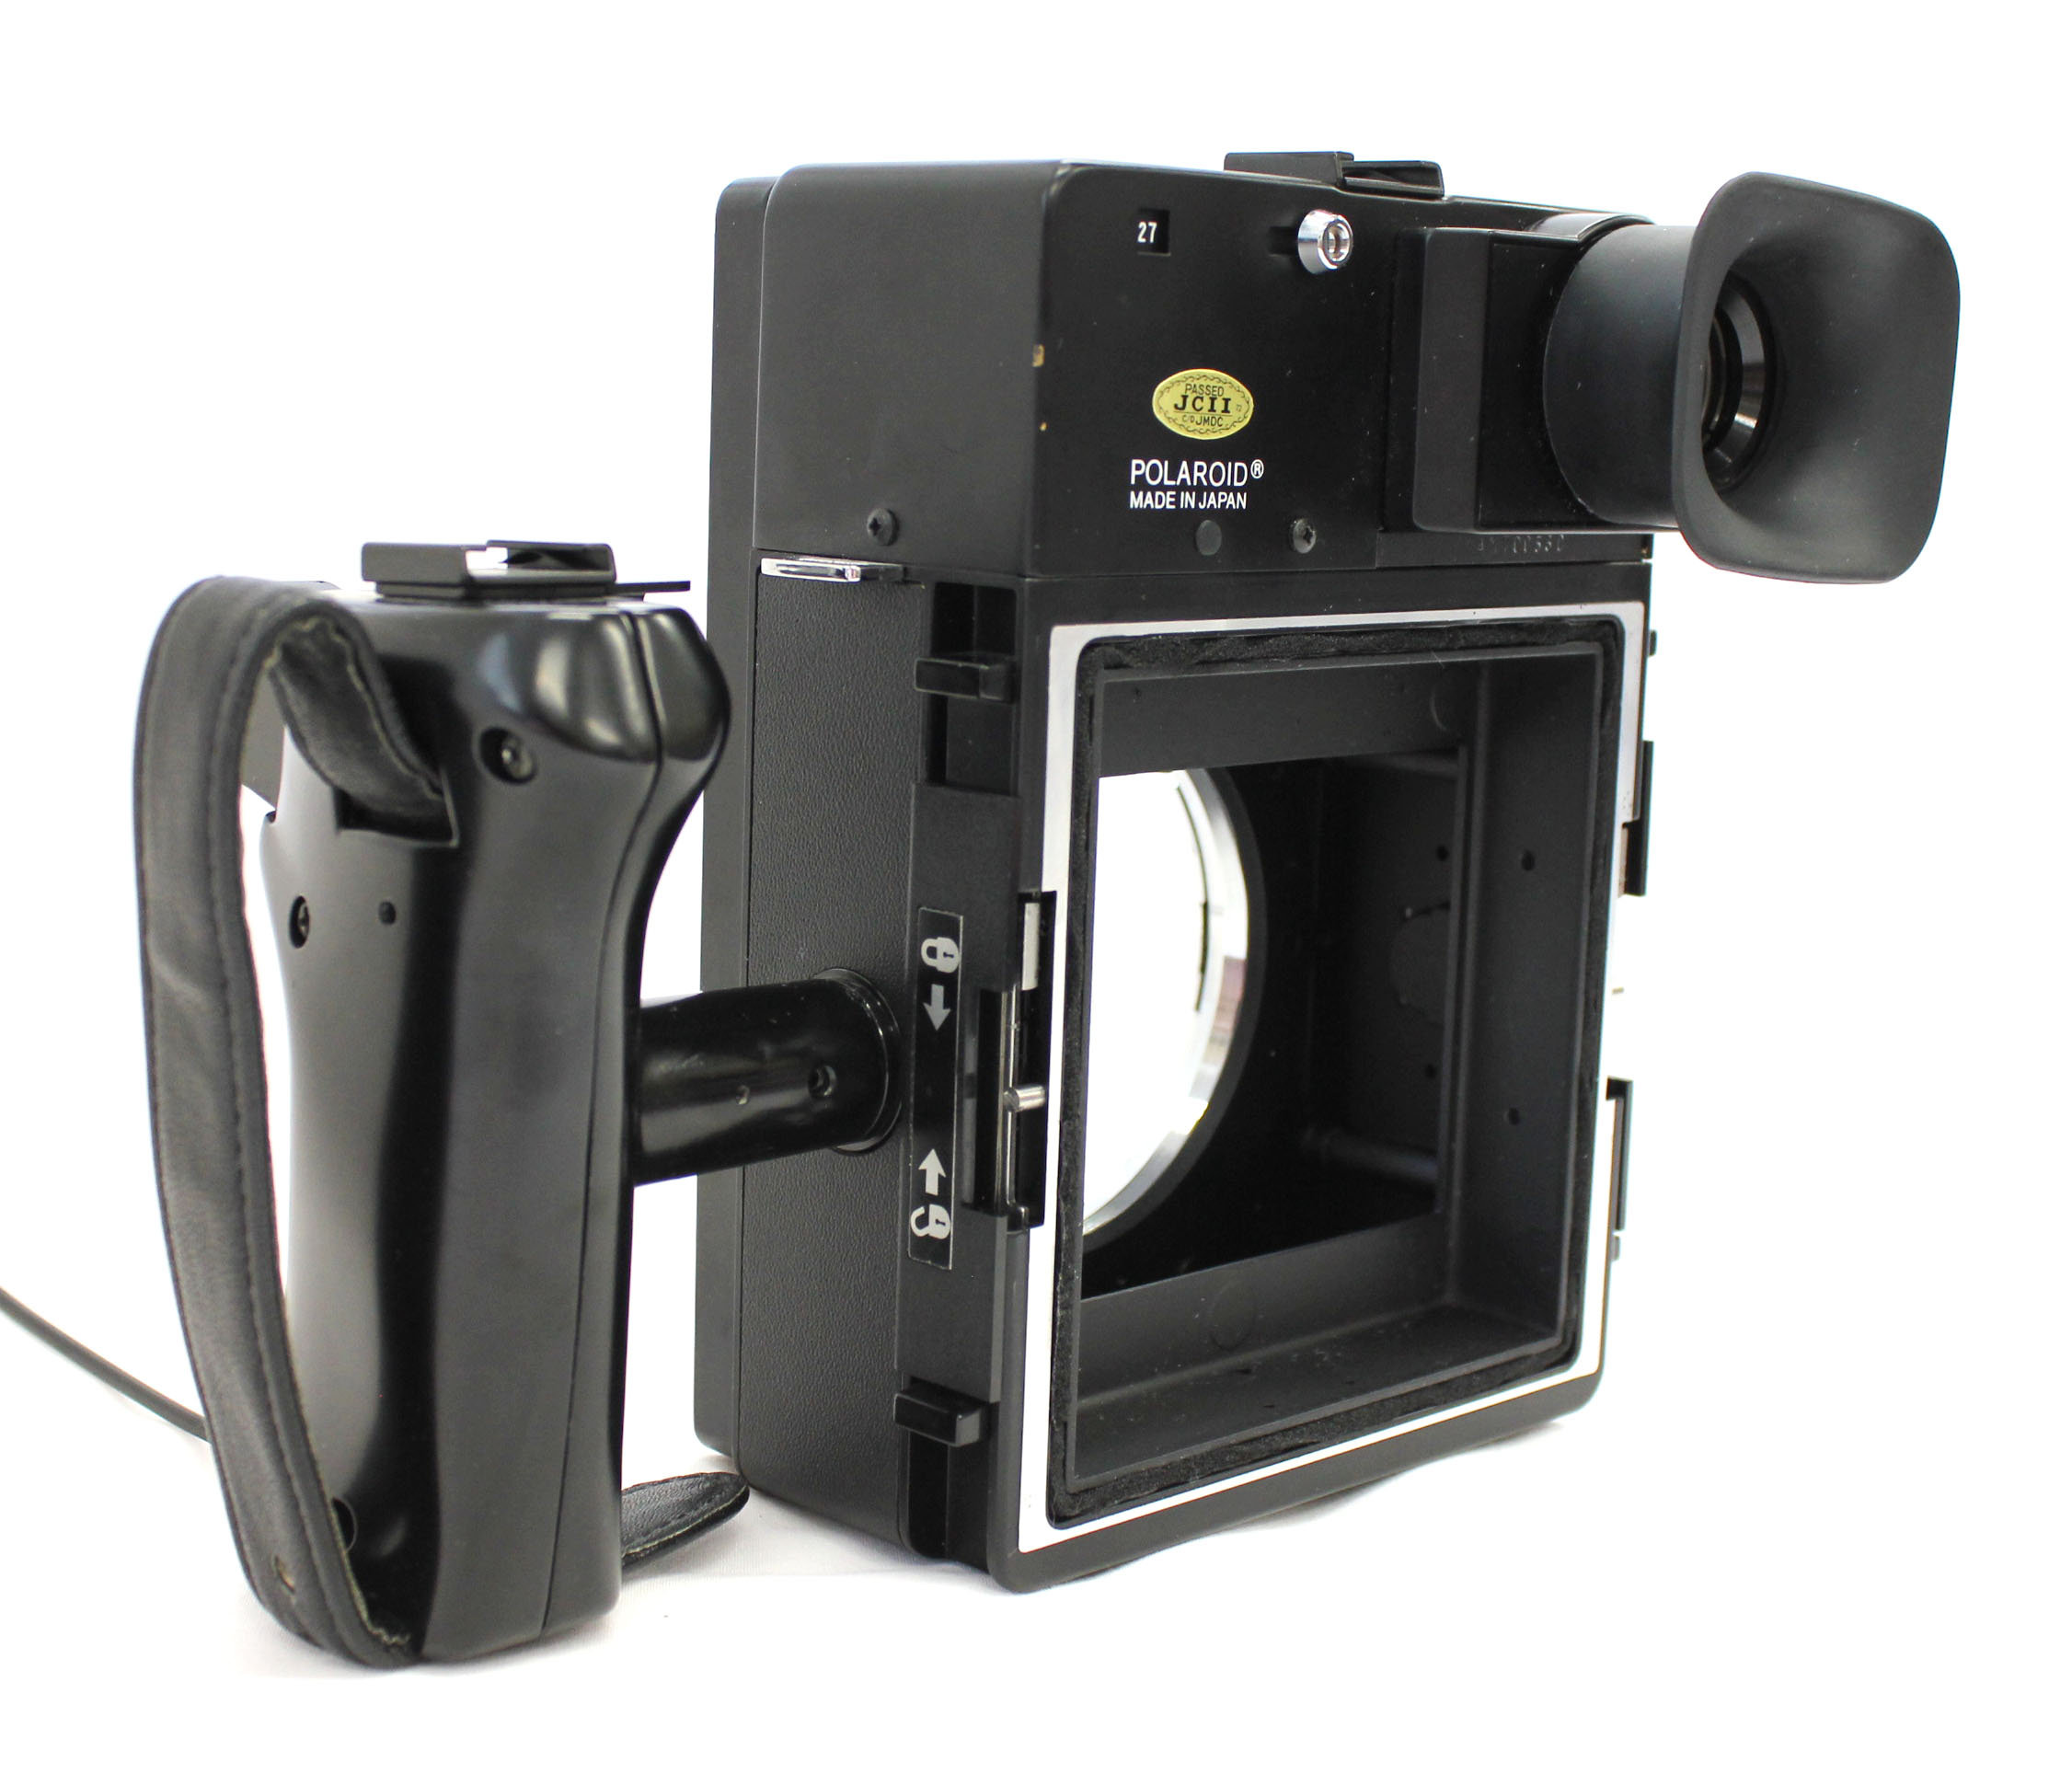  Polaroid 600SE Instant Camera w/ Mamiya 127mm F/4.7 Lens and Polaroid Back from Japan Photo 8